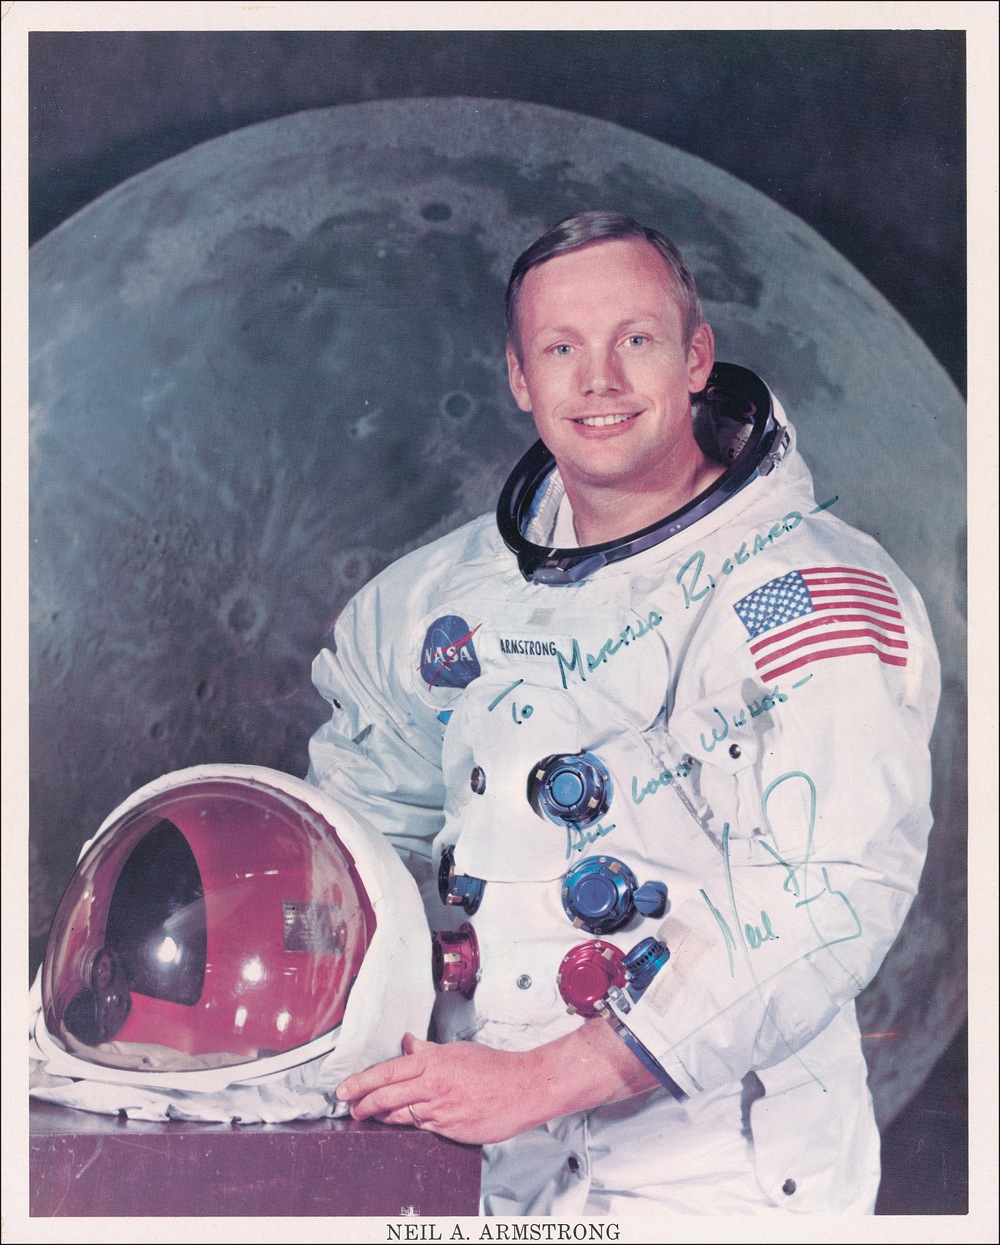 Lot #356 Apollo 11